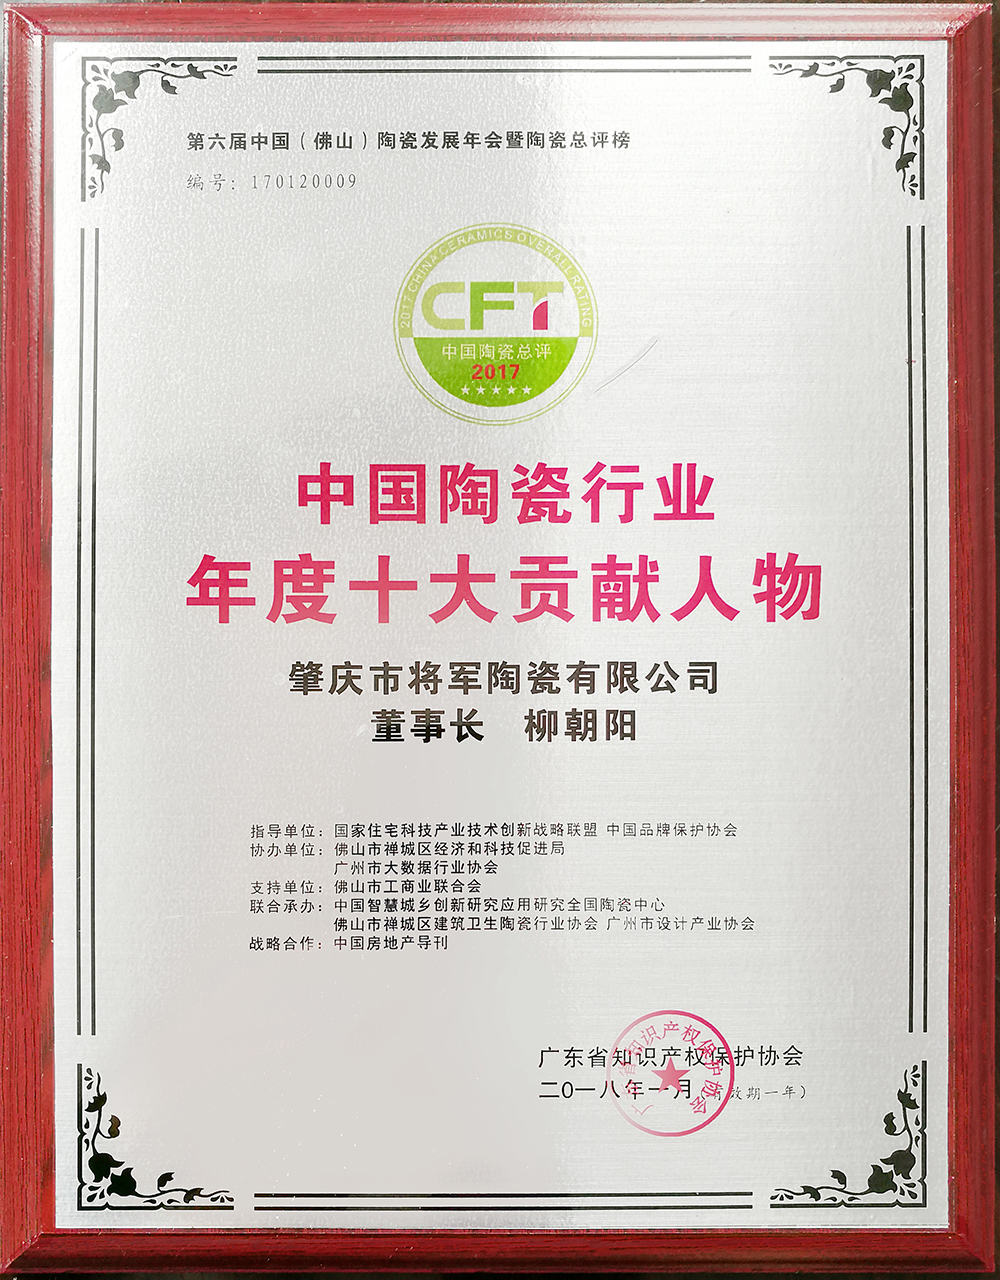 实力铸就荣誉丨米乐m6
企业荣获“中国家居十大创新品牌”称号
(图3)